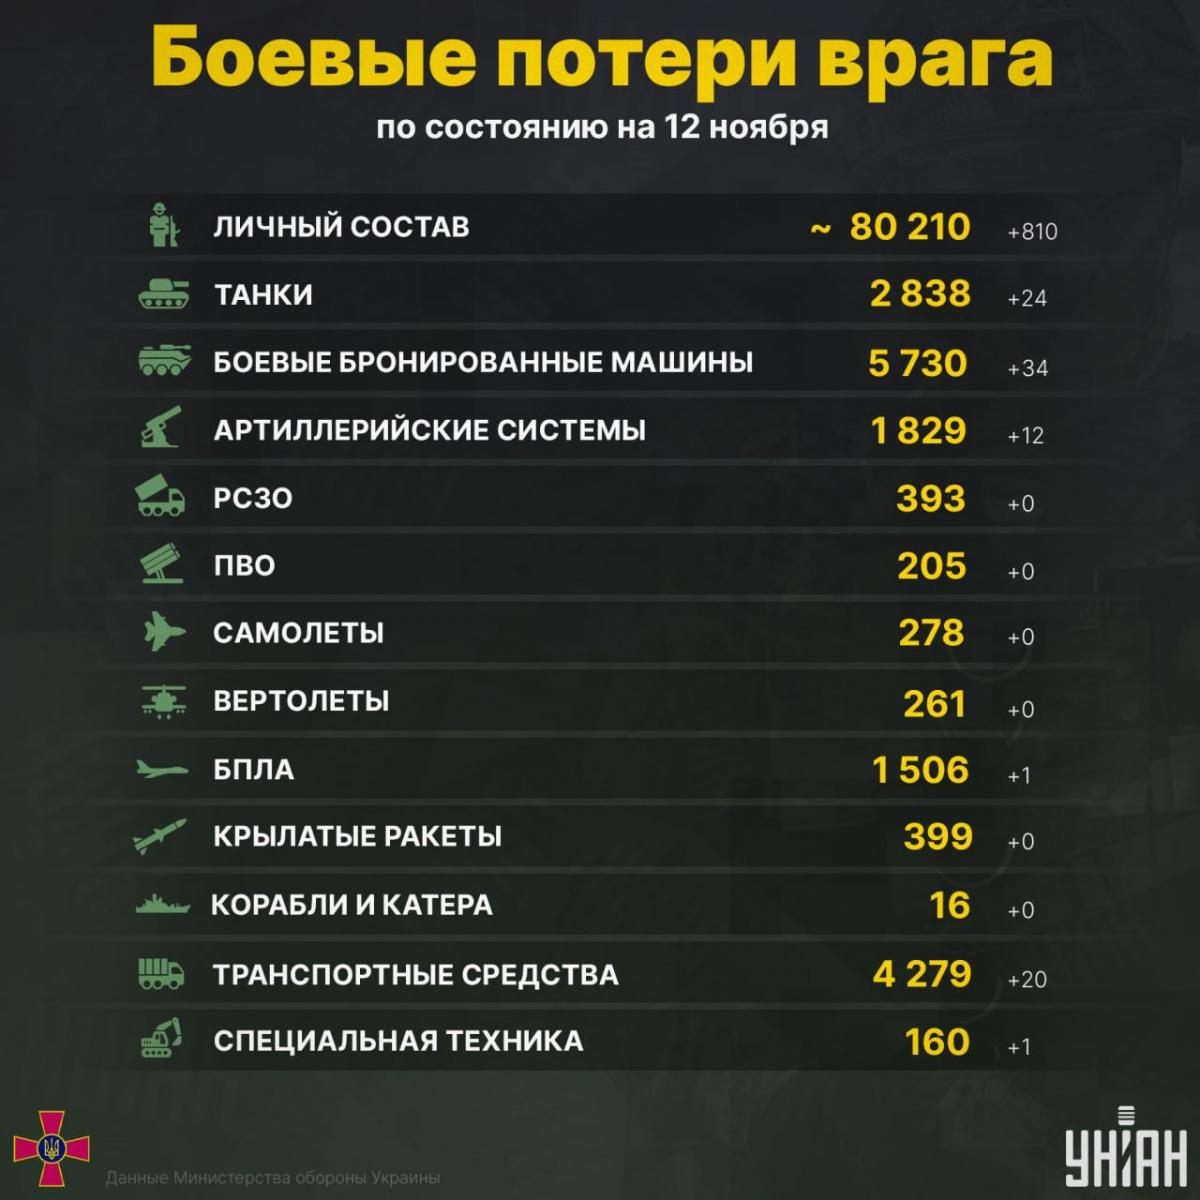 Инфографика УНИАН